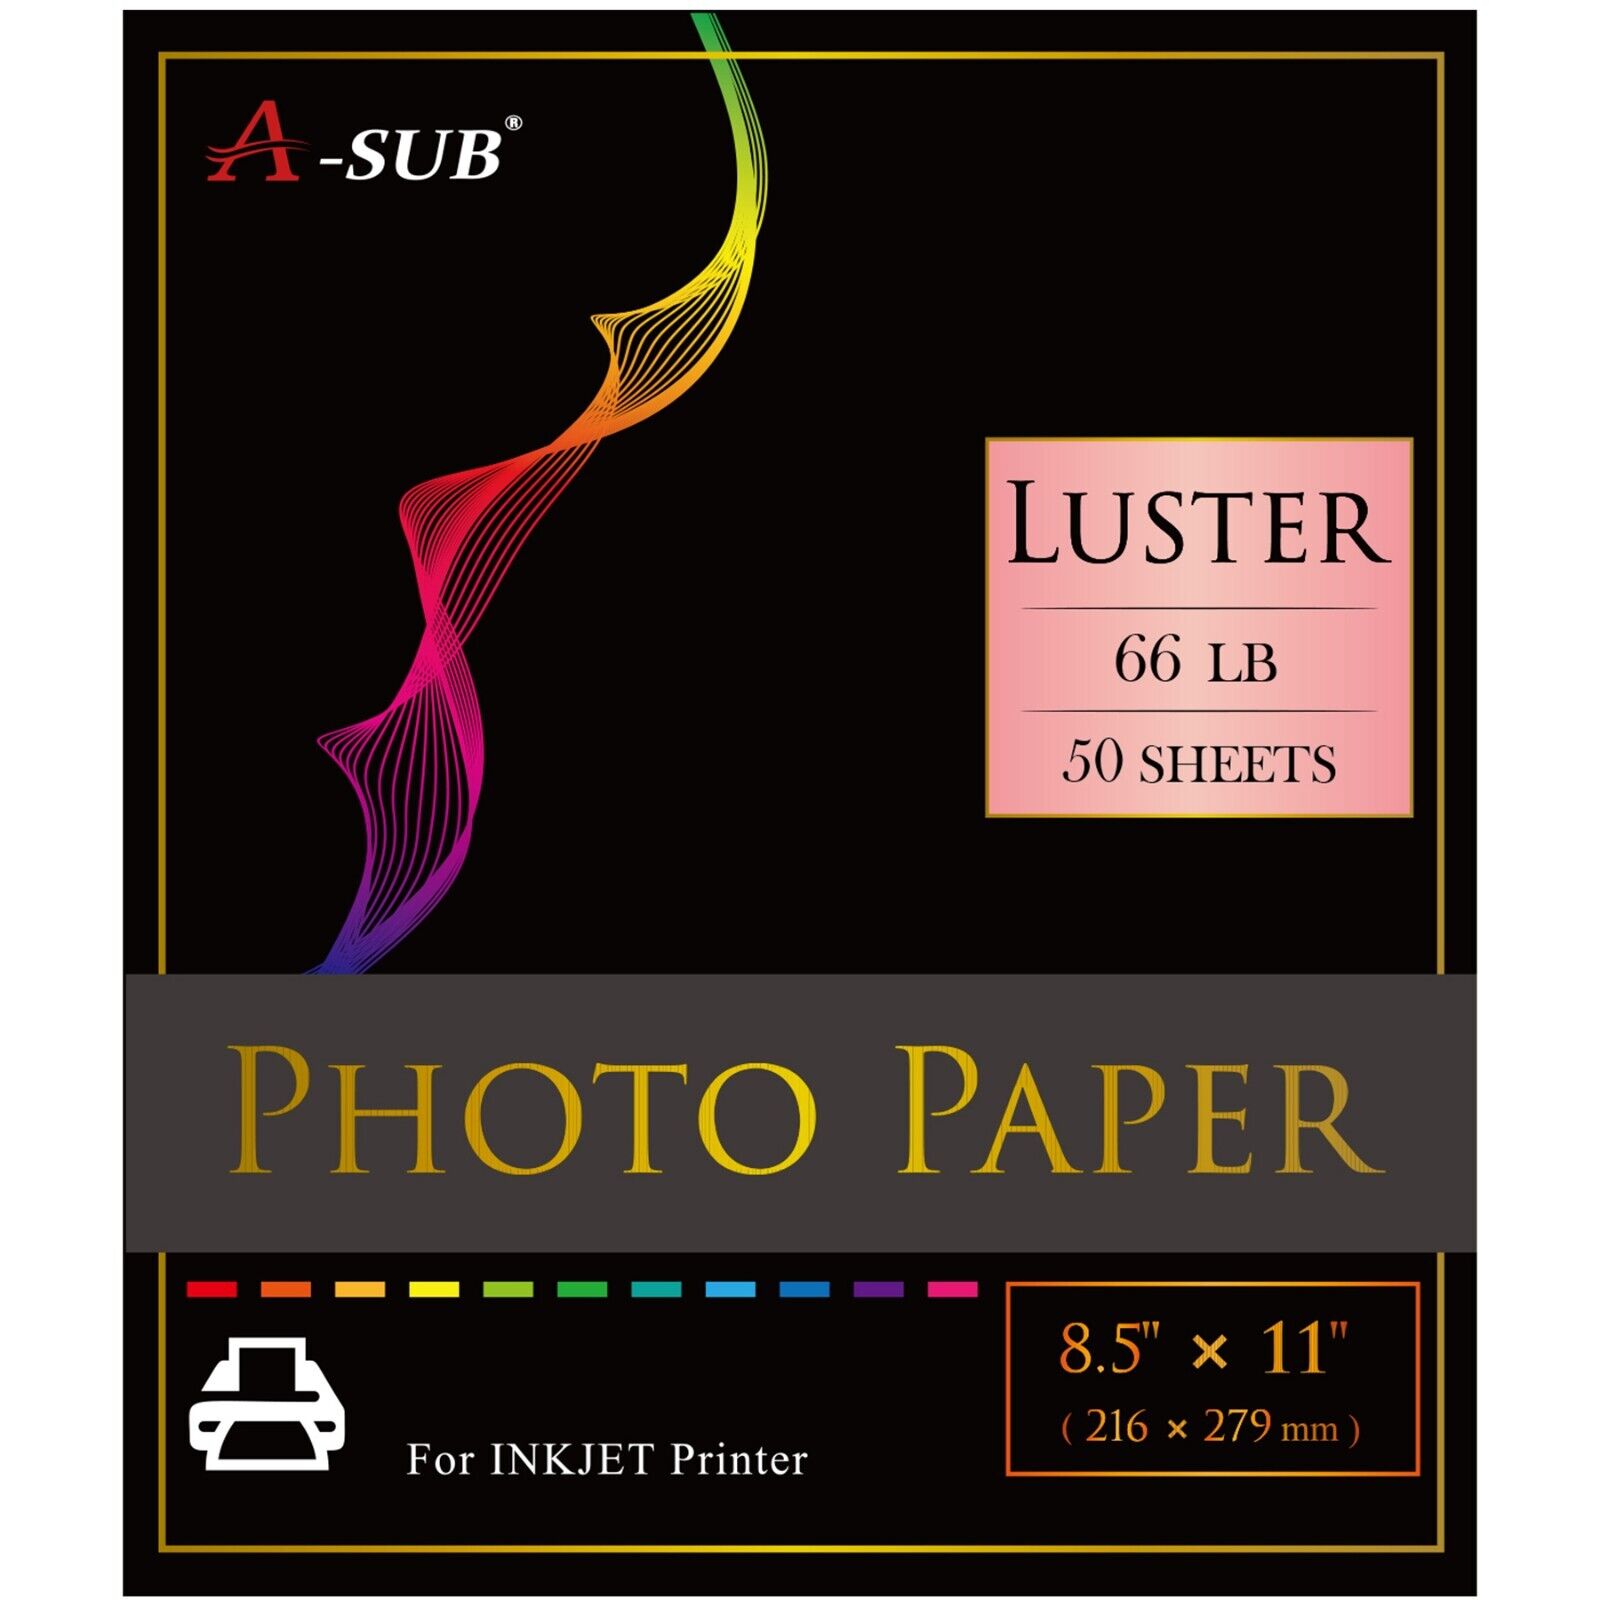 A-SUB Pro Luster Photo Paper 8.5x11 for Inkjet Printer 250g Semi Gloss 50PK 66lb